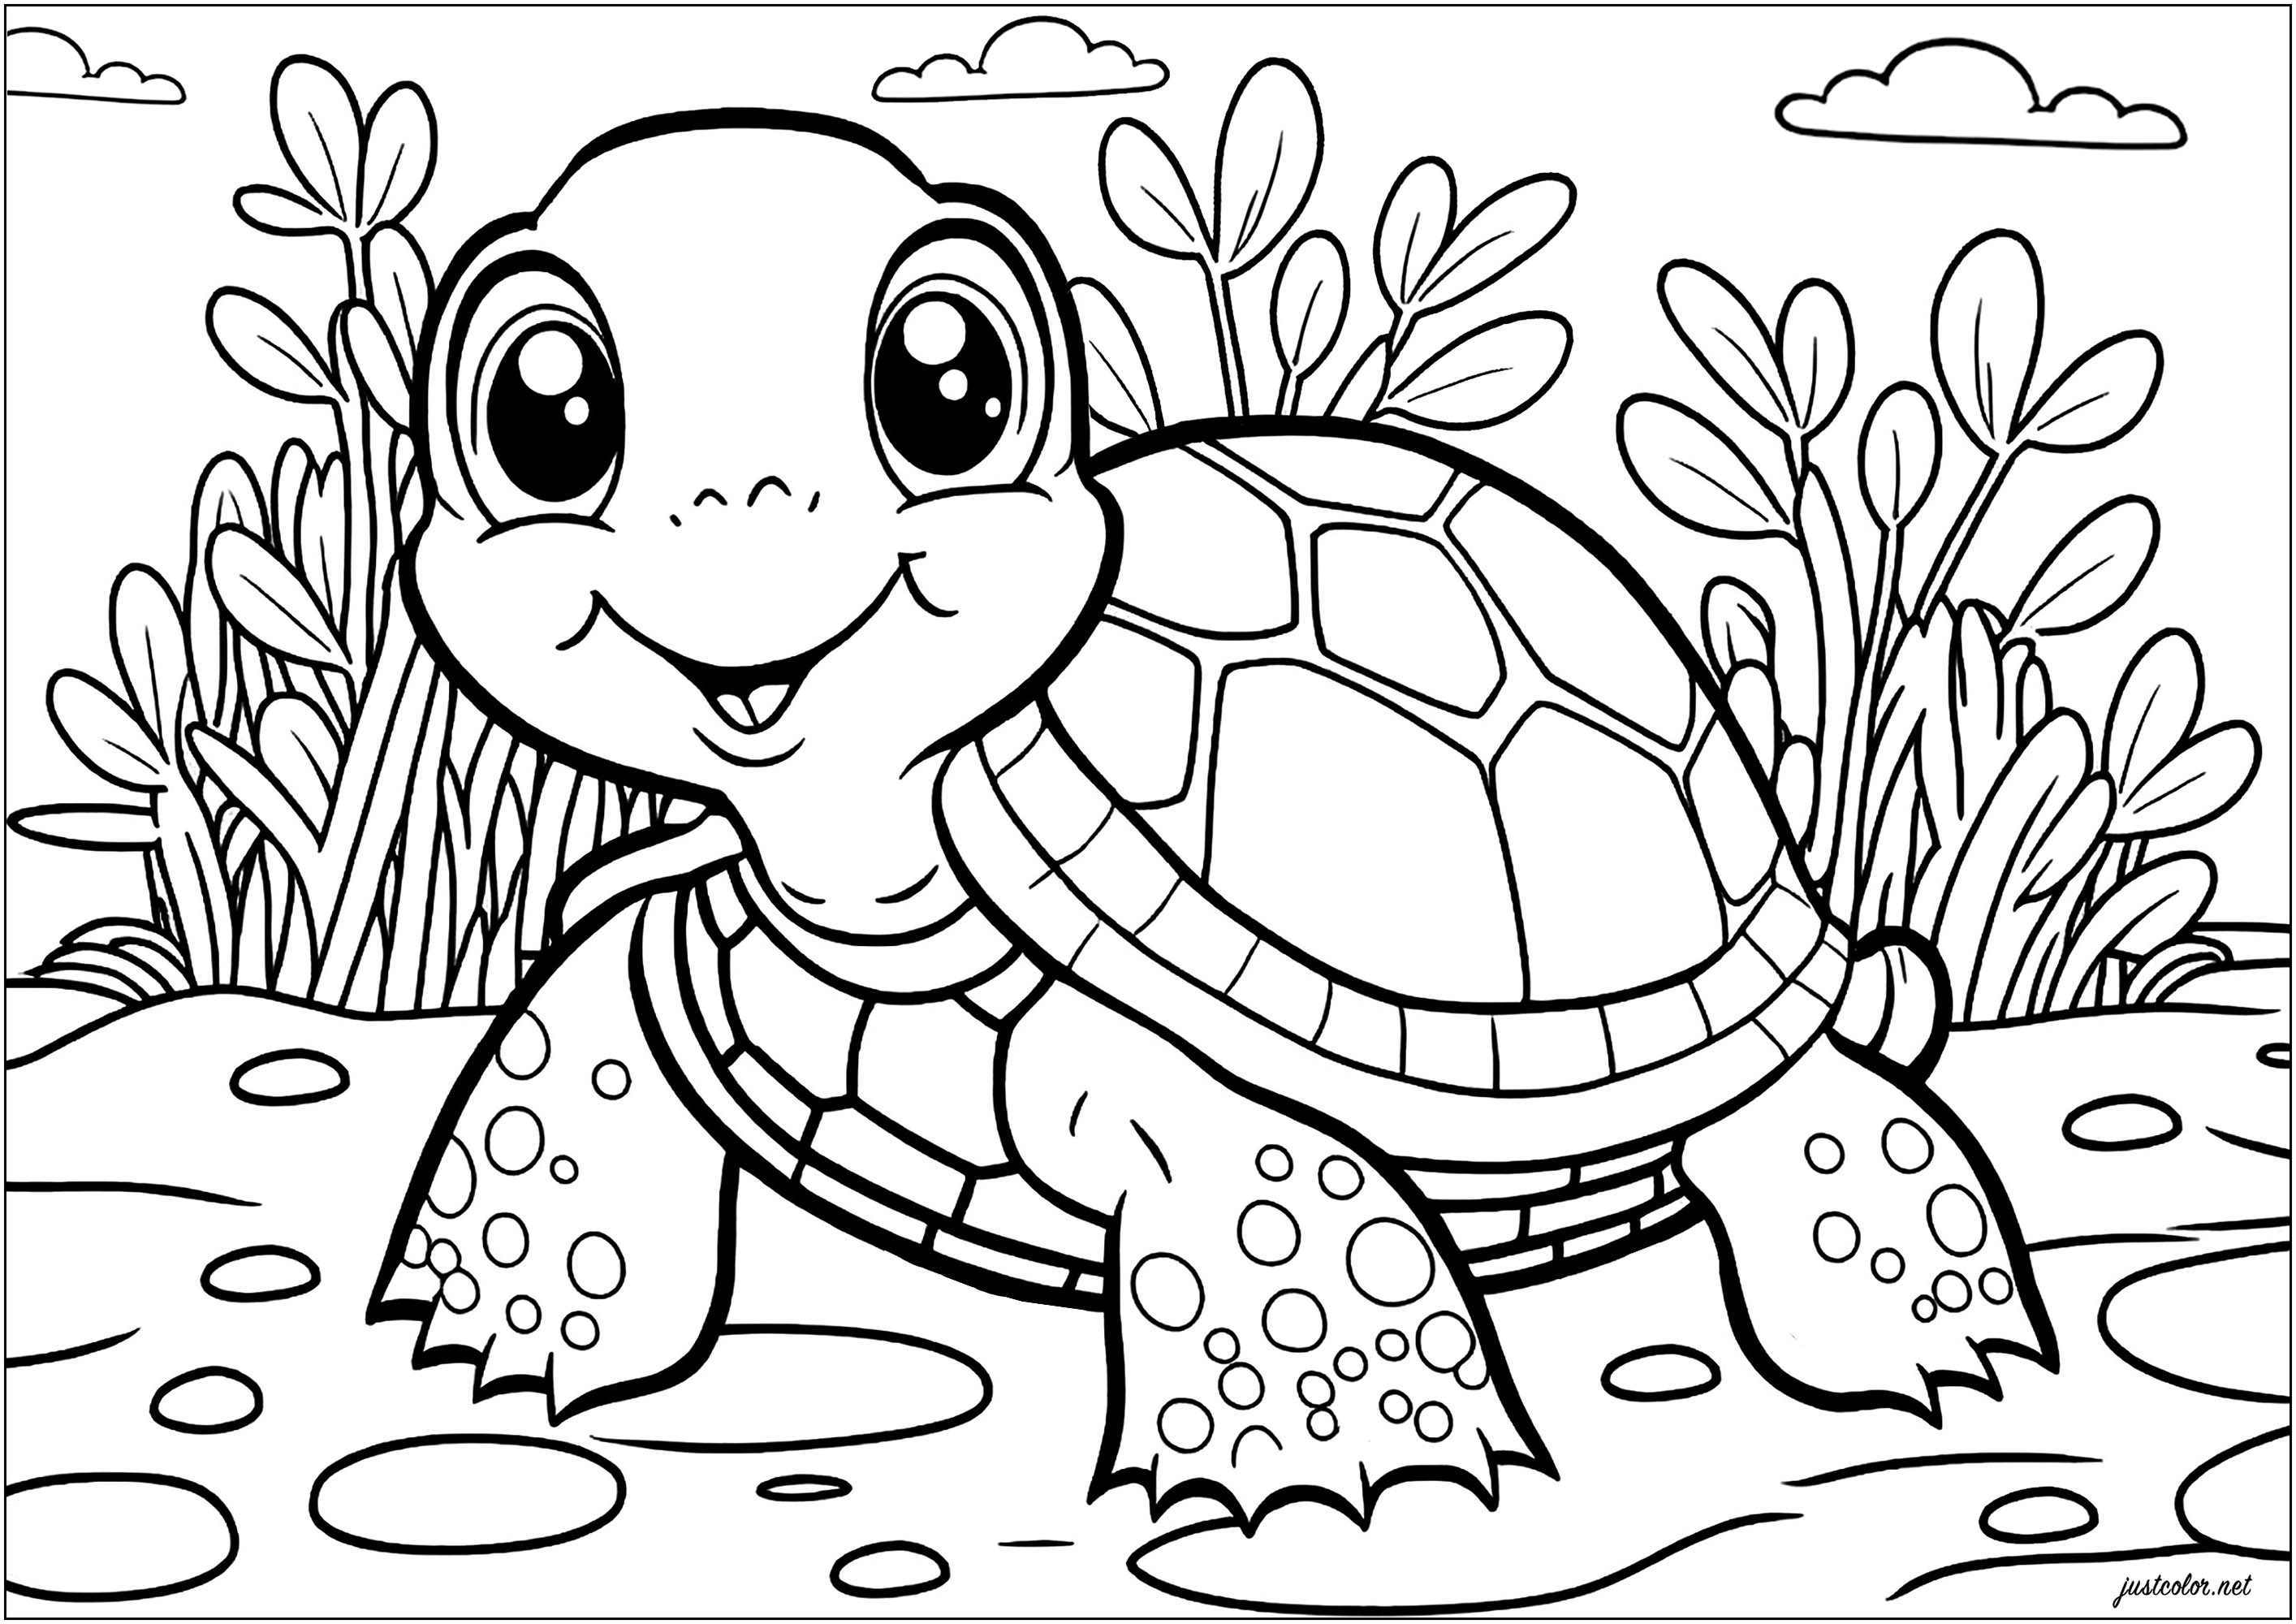 Tortuga sonriente - Tortugas - Colorear para Adultos